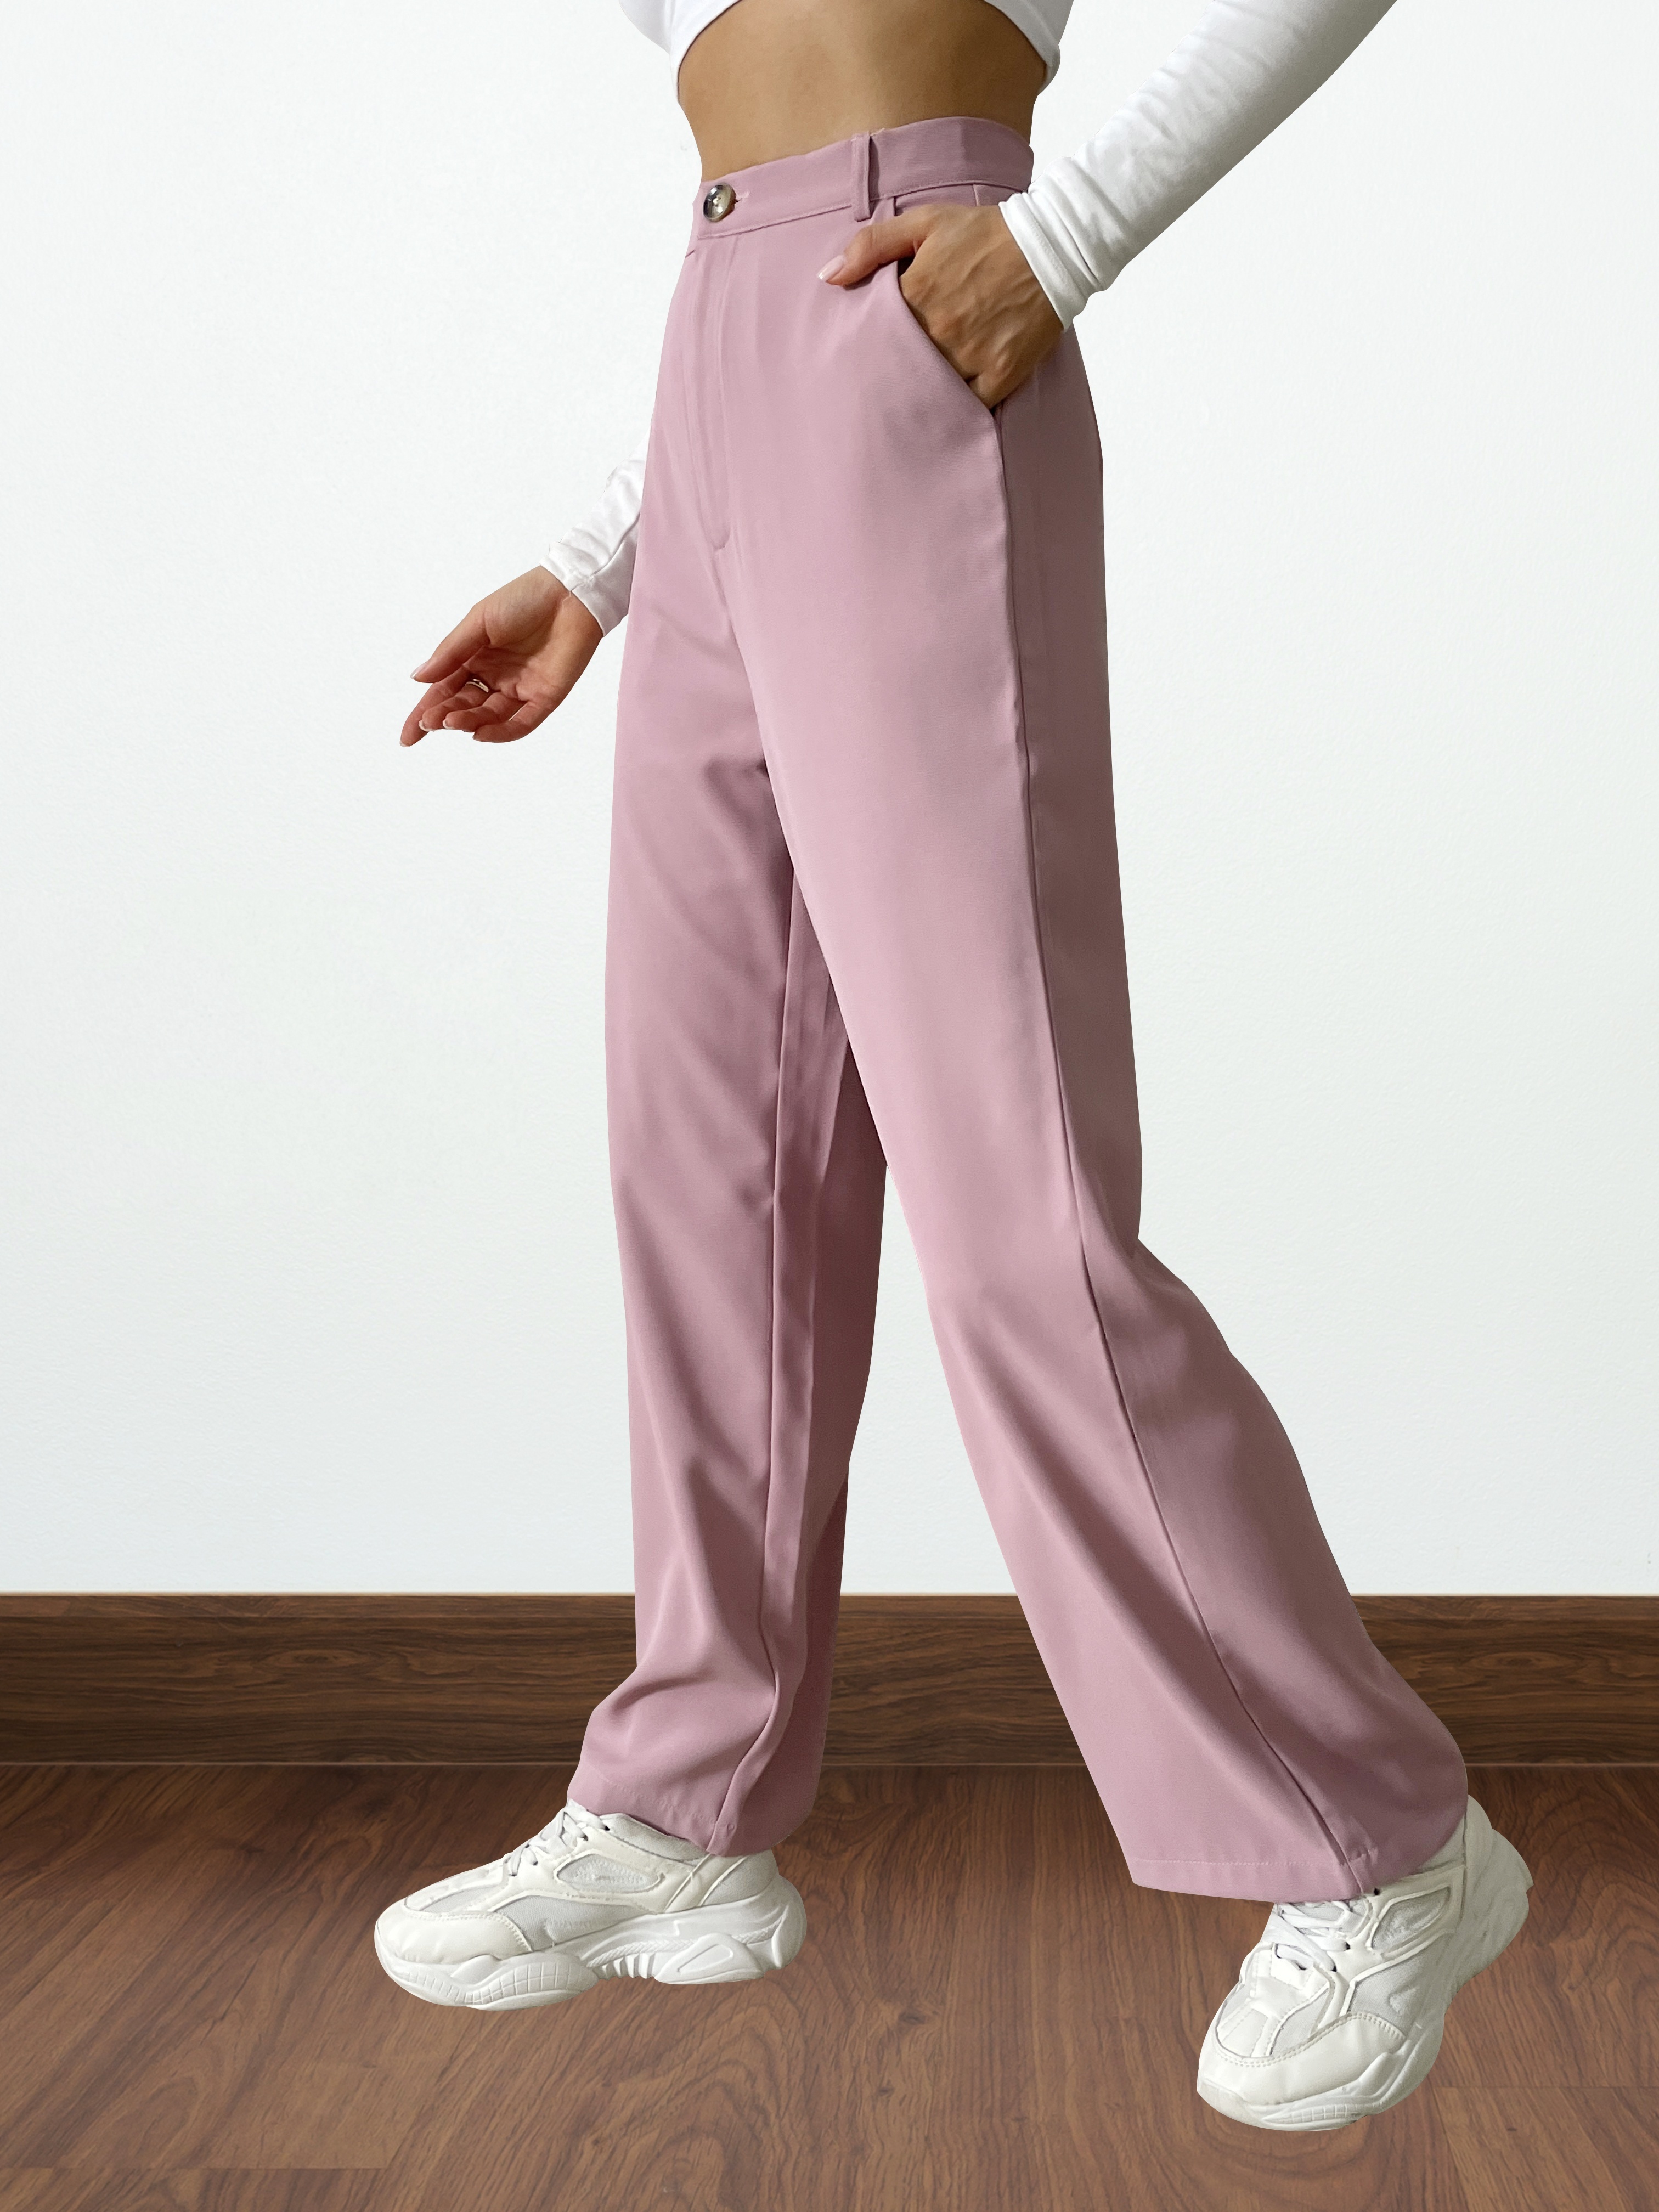 Nueva llegada cómodo Pantalón mujer Streetwear Algodón Pantalón